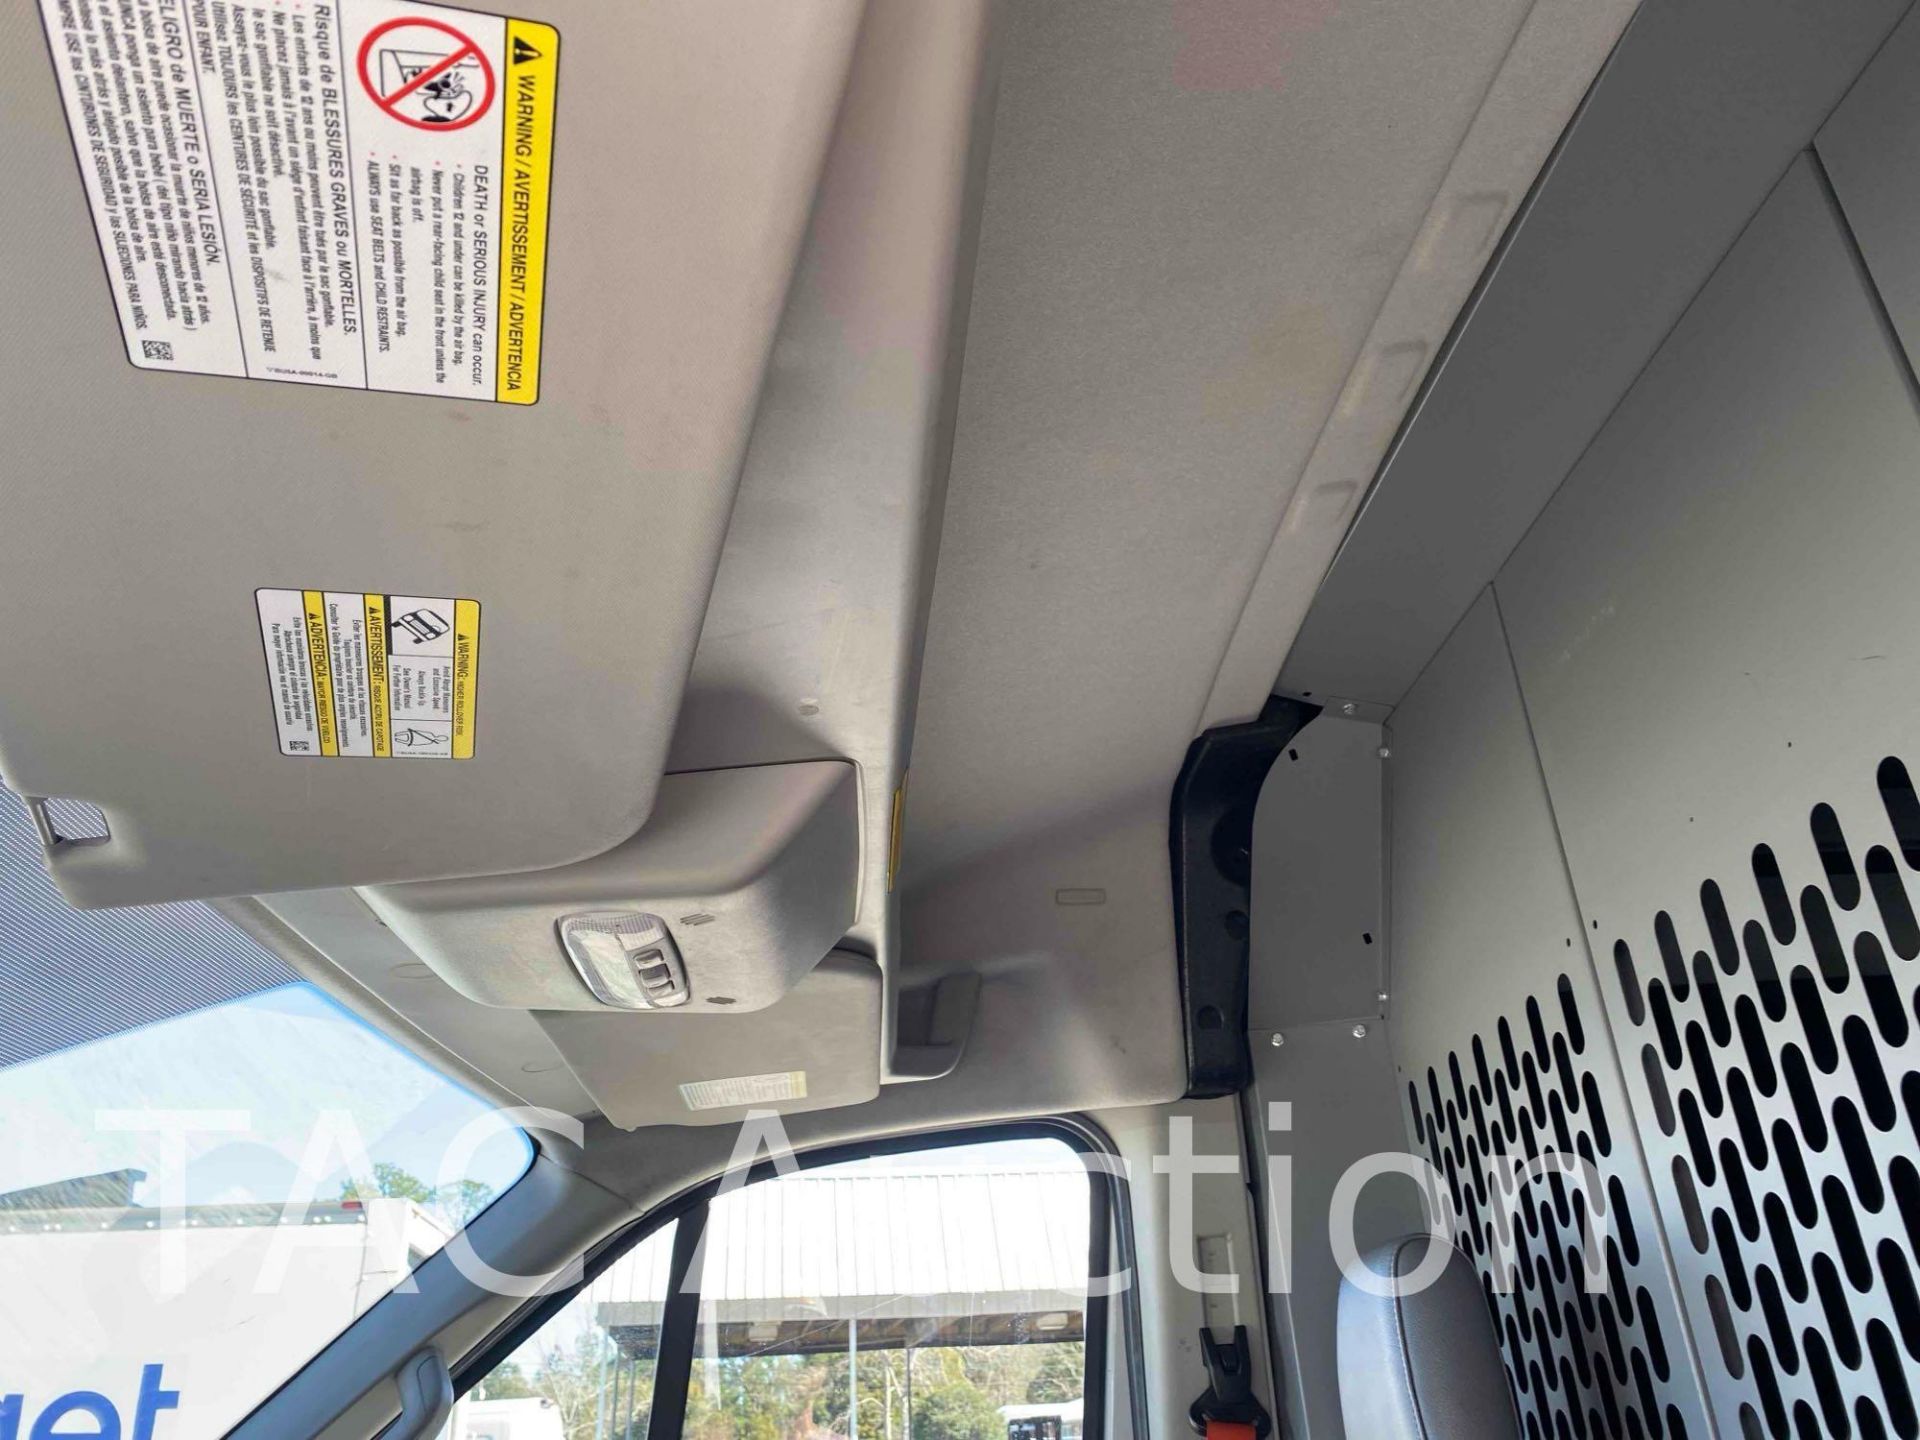 2019 Ford Transit 150 Cargo Van - Image 16 of 44